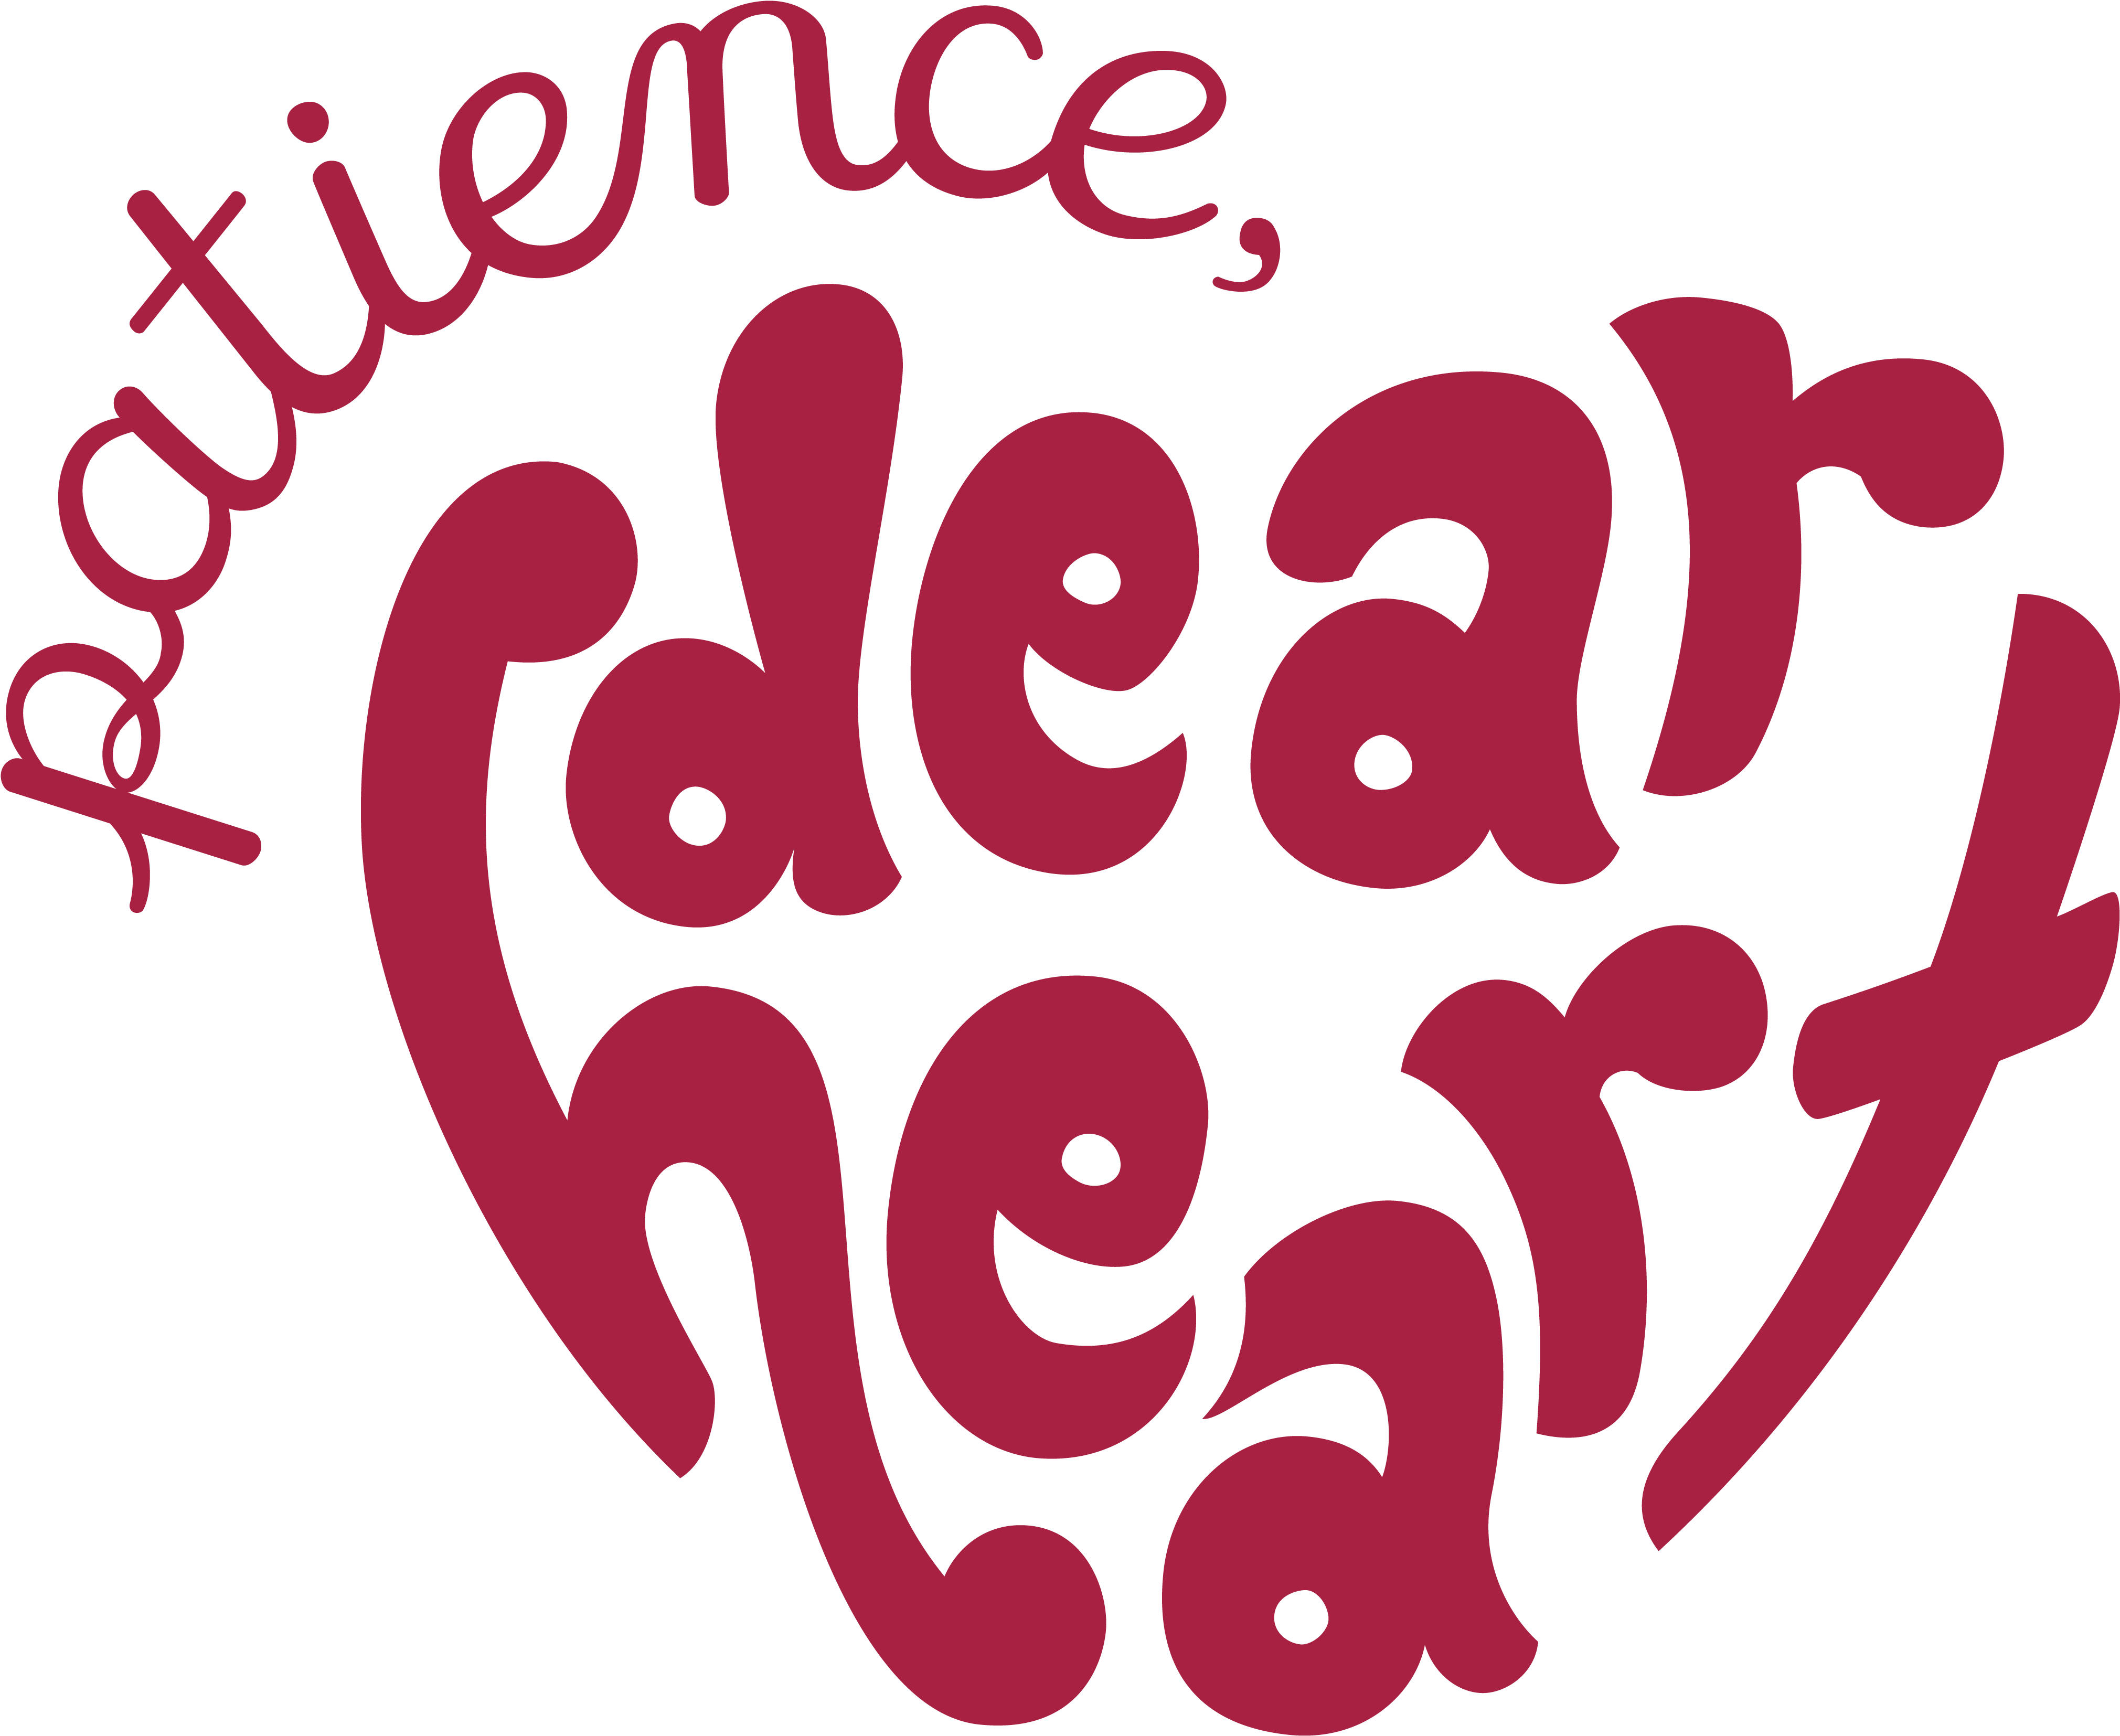 Dear Heart Illustration - Illustration (4200x4200)